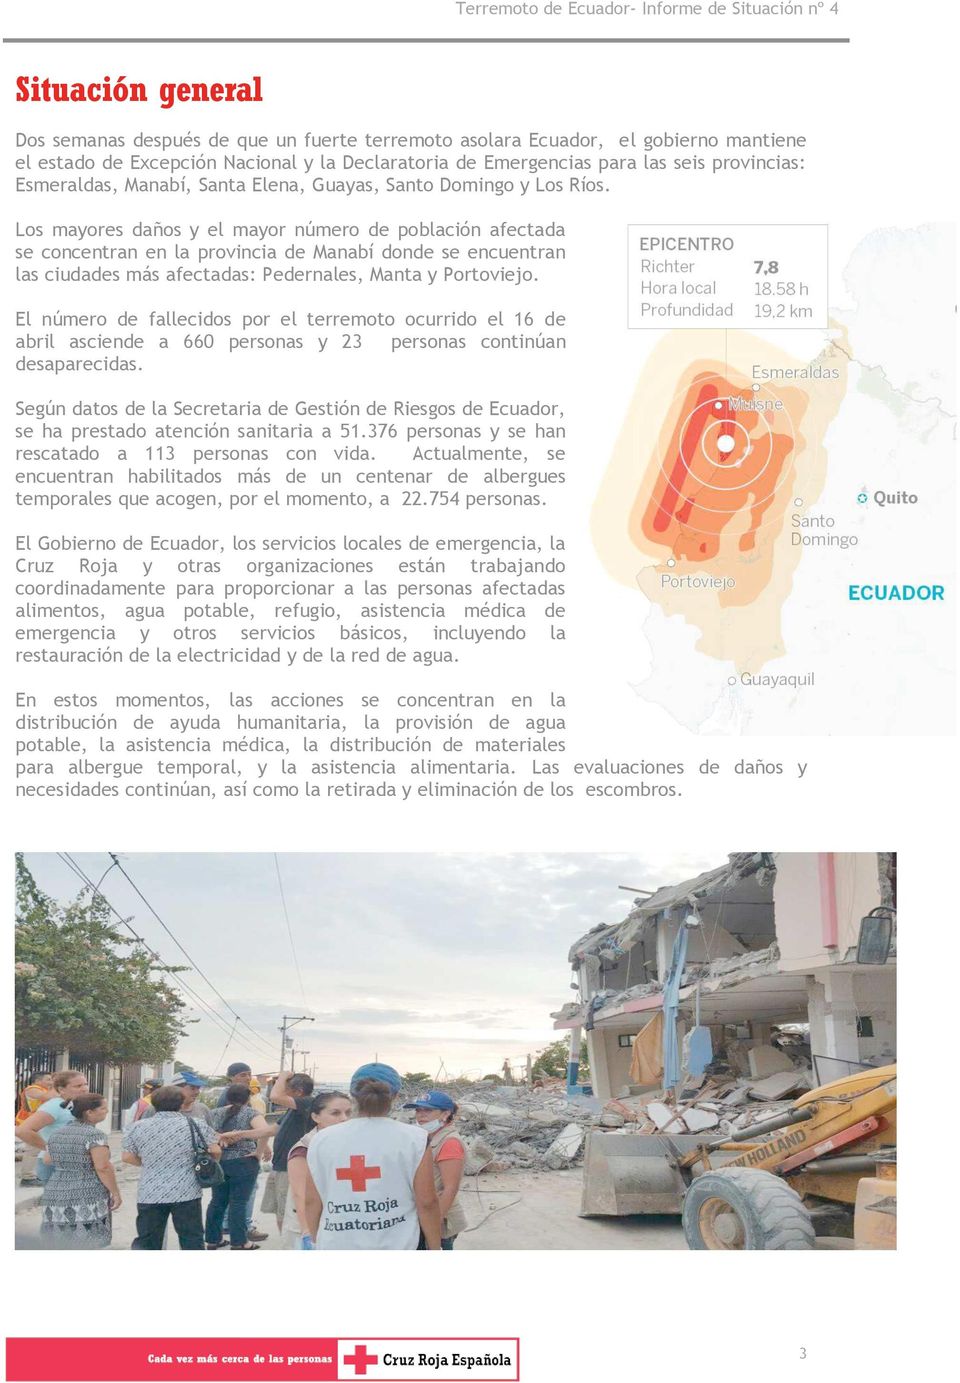 Los mayores daños y el mayor número de población afectada se concentran en la provincia de Manabí donde se encuentran las ciudades más afectadas: Pedernales, Manta y Portoviejo.